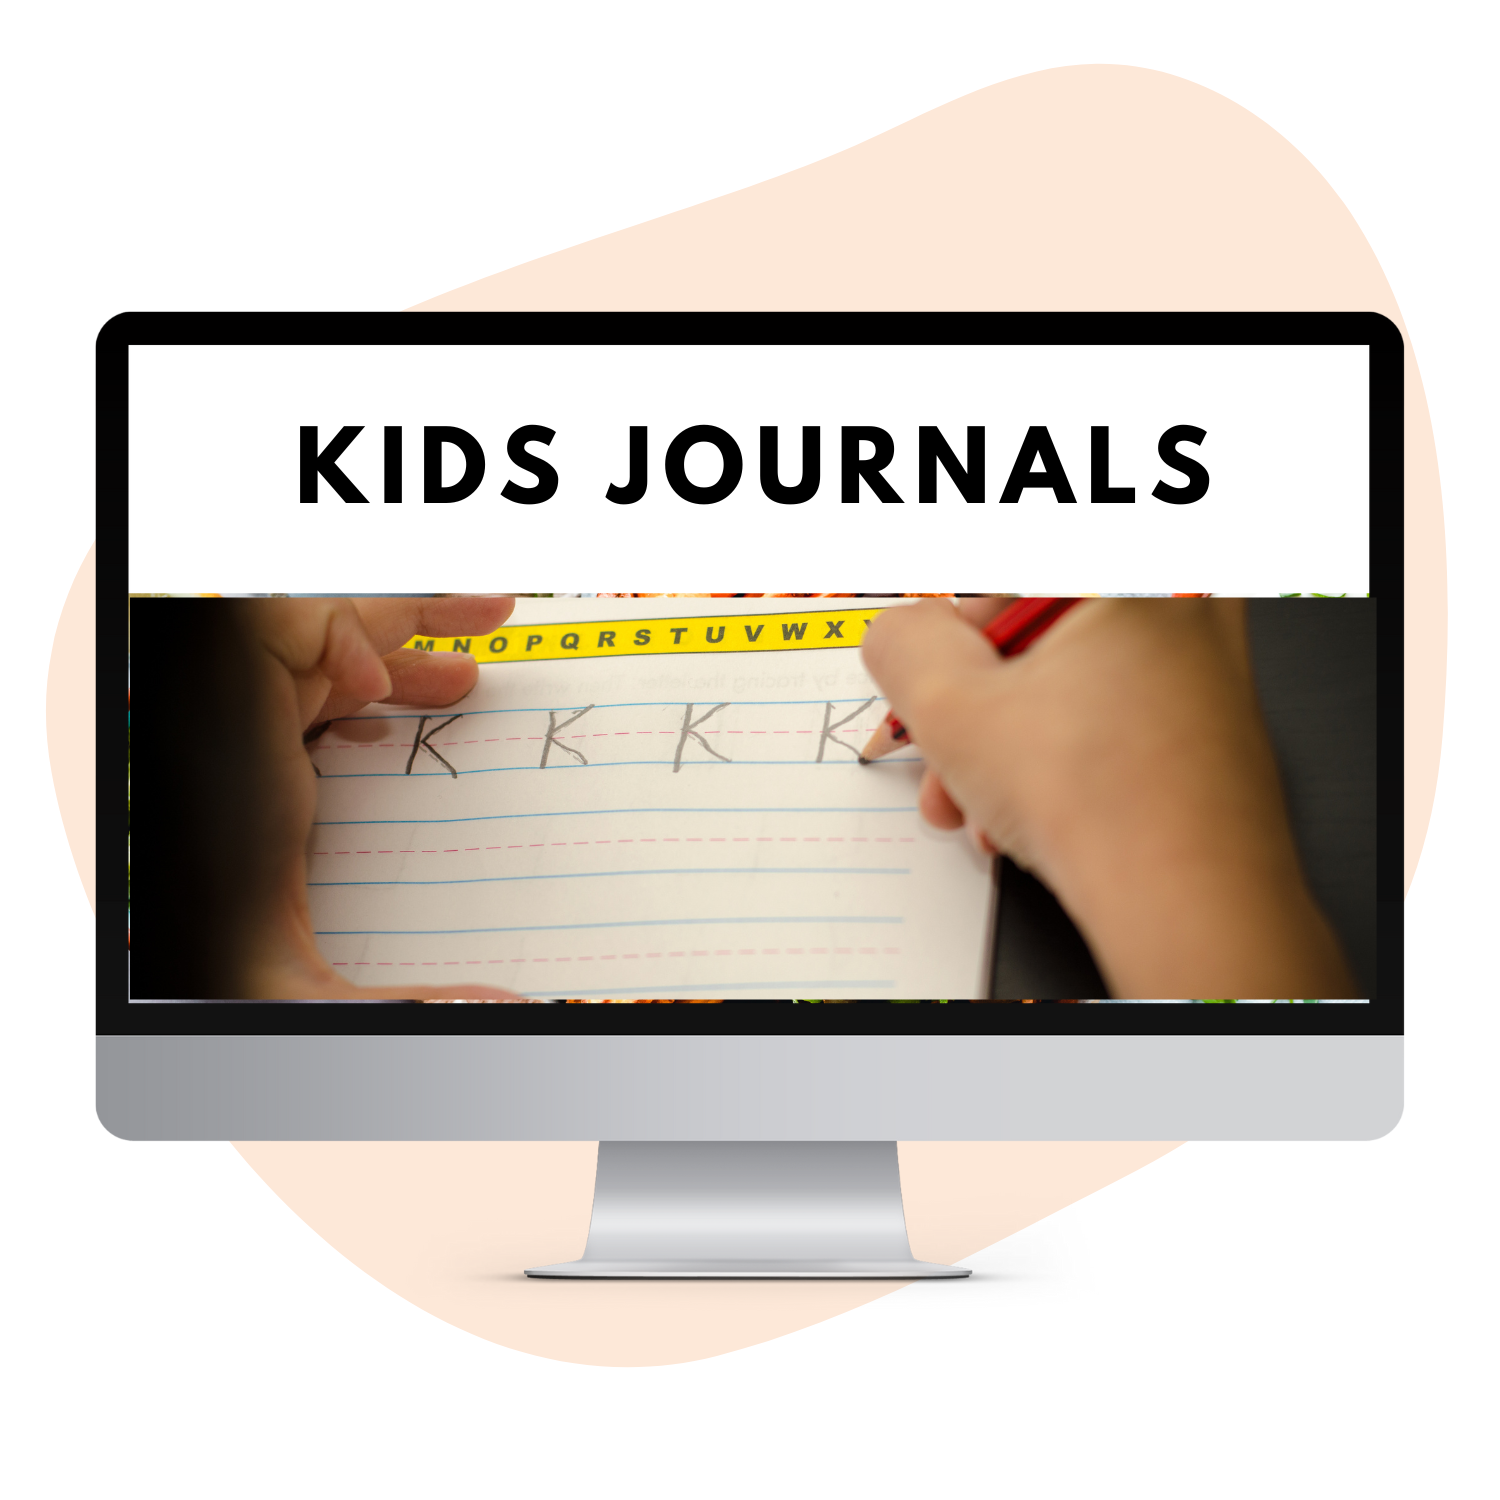 Kids Journals